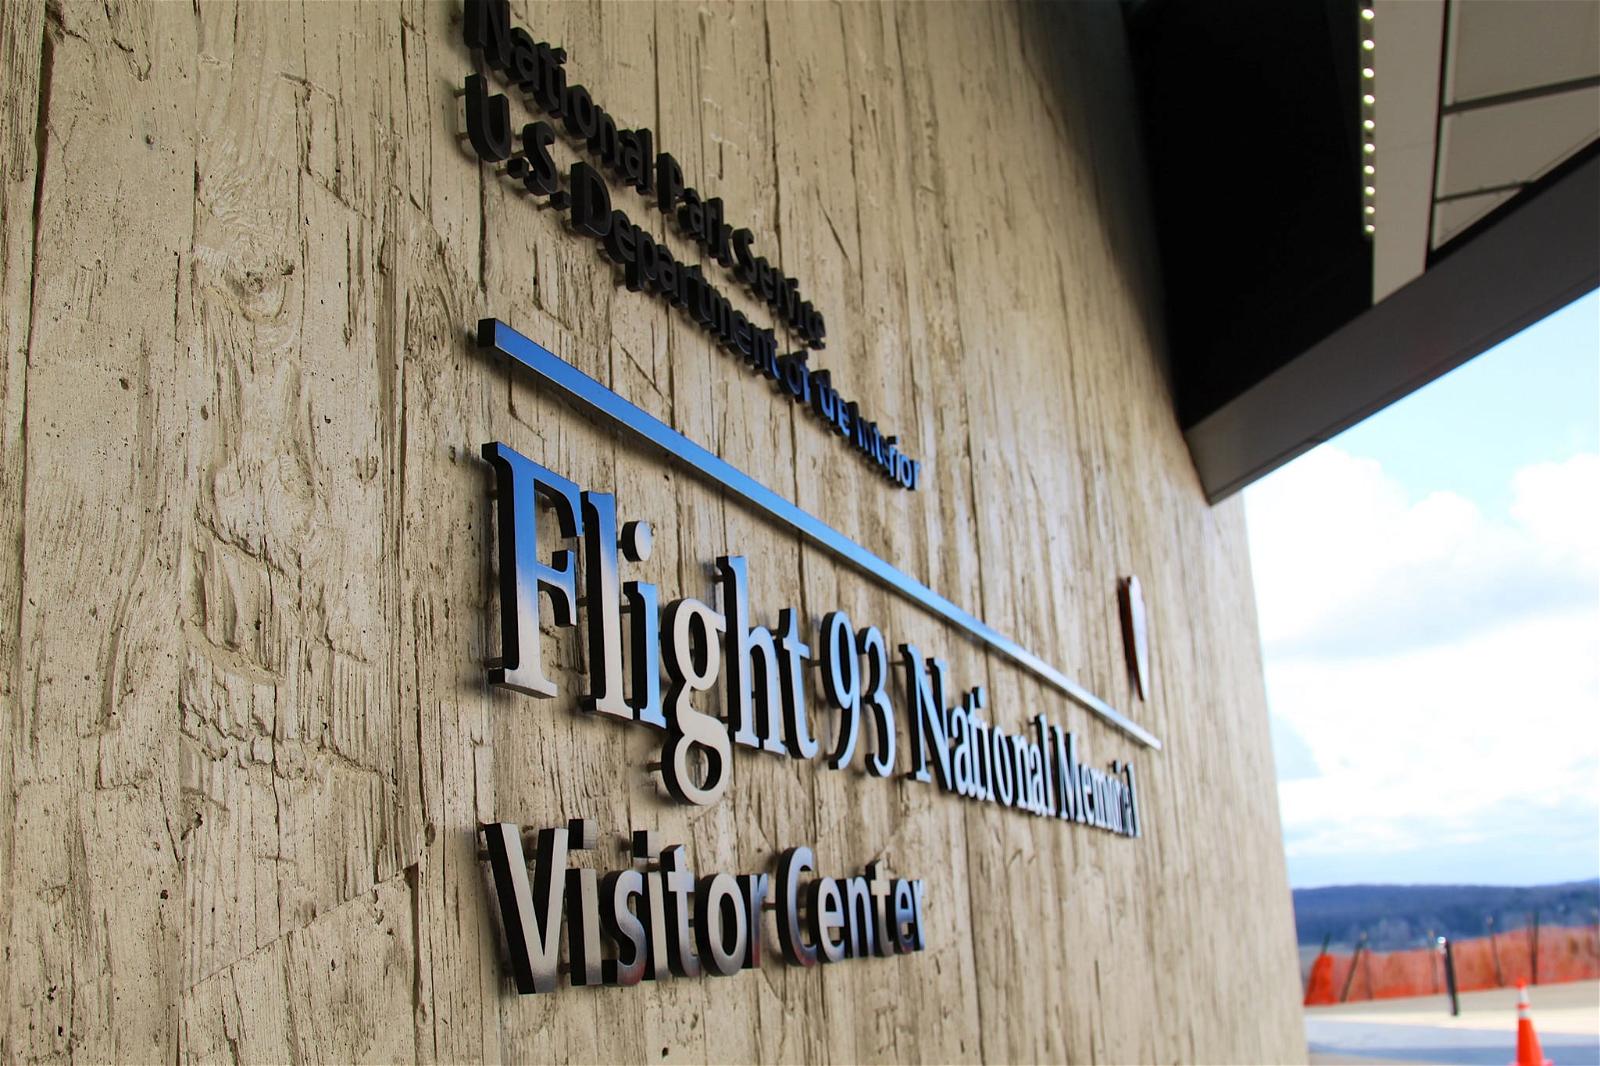 Flight 93 National Memorial 의 이미지. sign nps flight93